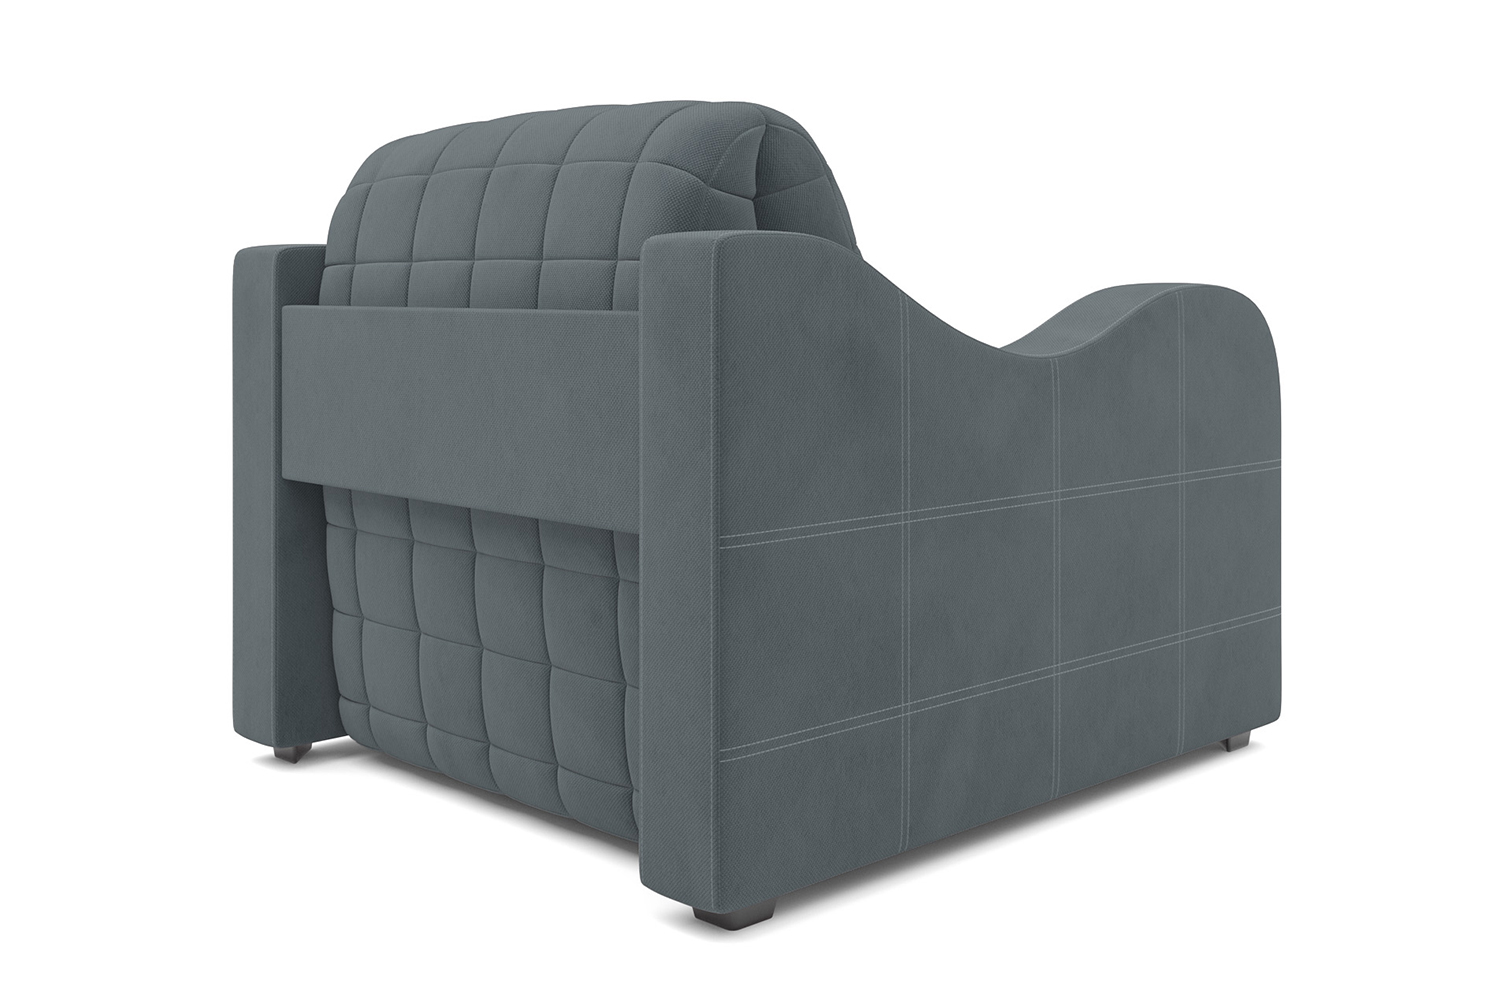 Кресло кровать велюр синий